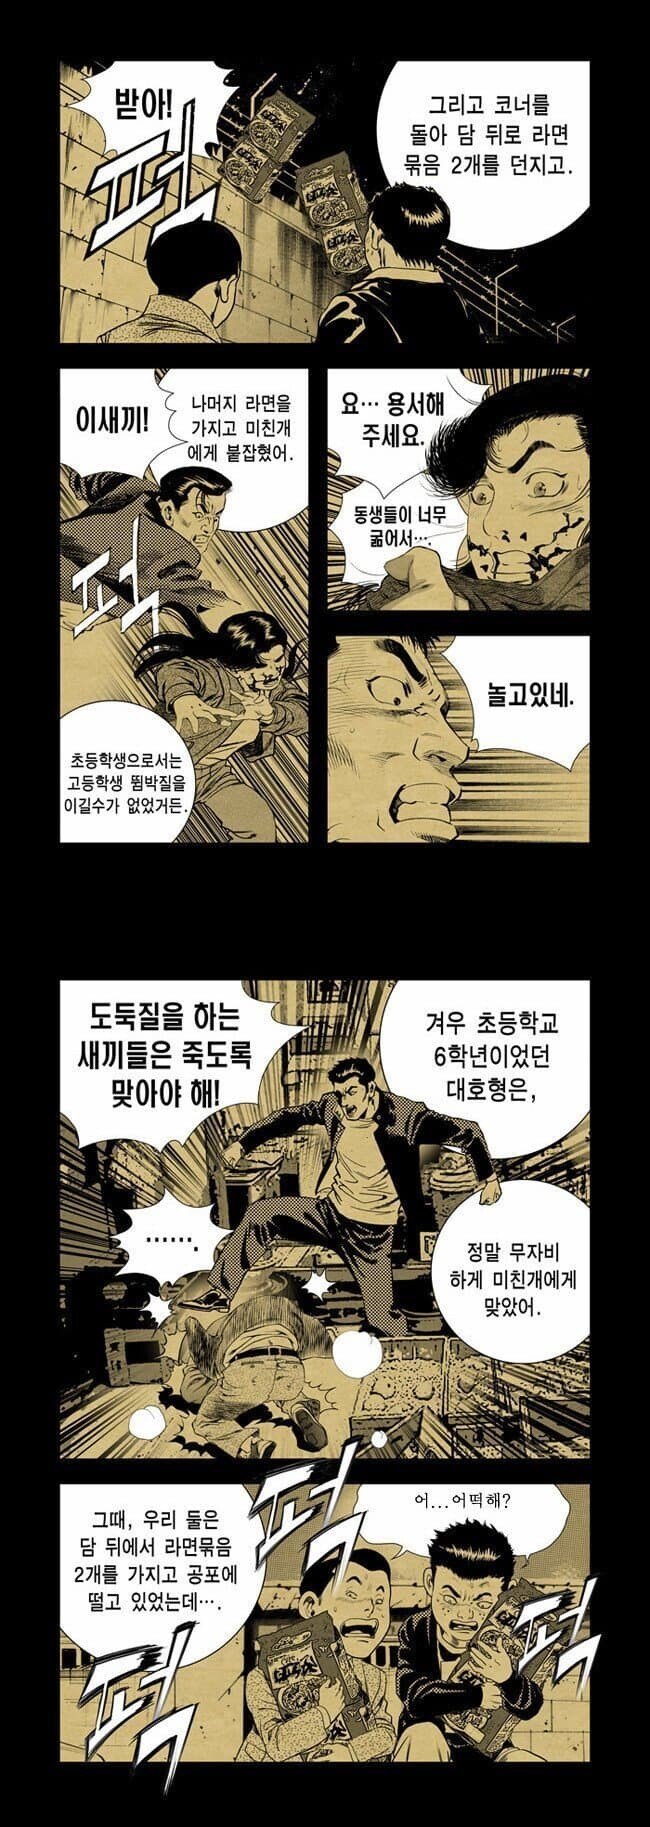 1647916865.jpg 만신 김성모 ㄹㅇ 실화 기반 만화...jpg